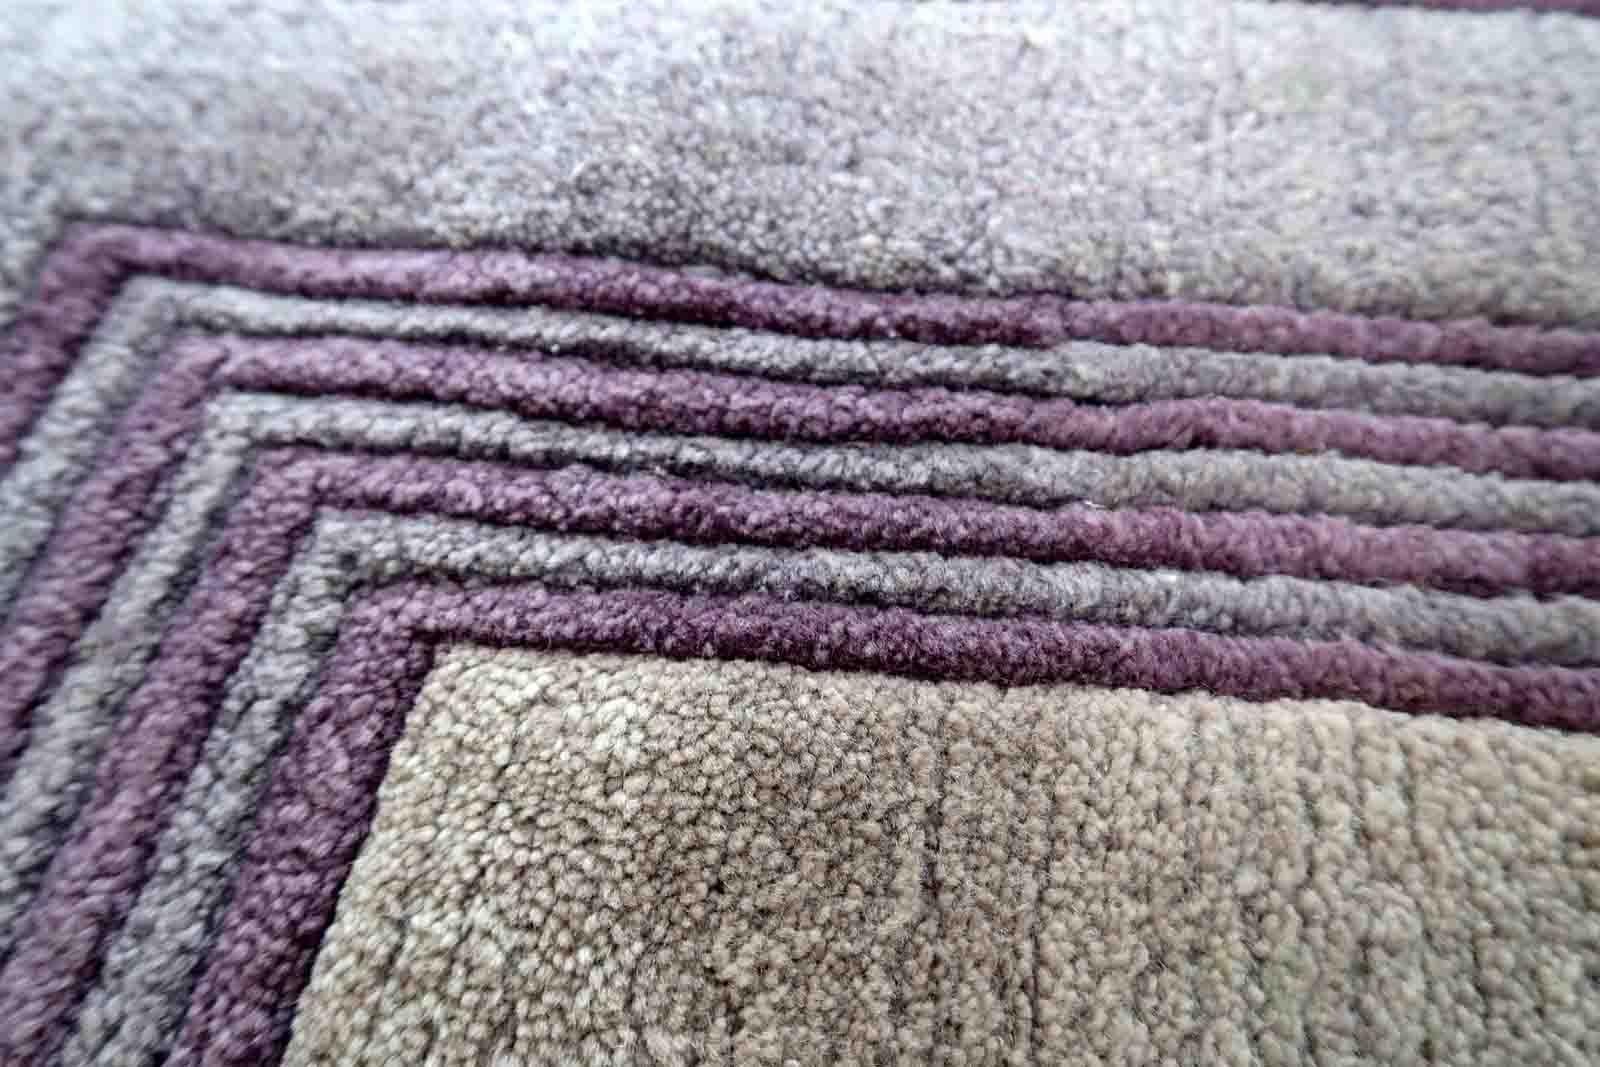 Tapis tibétain vintage Khaden fait à la main, au motif géométrique. Le tapis a été fabriqué en laine à la fin du 20e siècle. Il est en bon état d'origine.

-état : original bon,

-vers : les années 1960,

-taille : 2,3' x 4,6' (73cm x